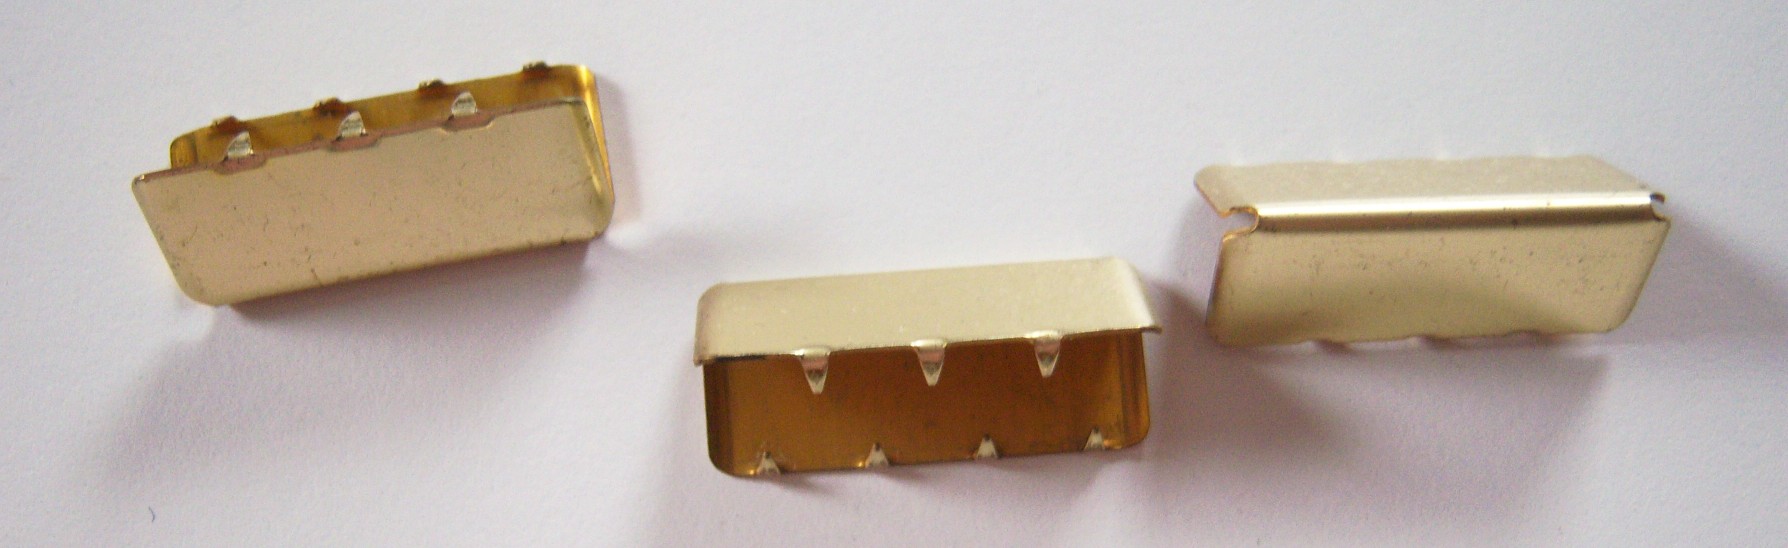 Gold Metal 1 1/4" Belt End Grip